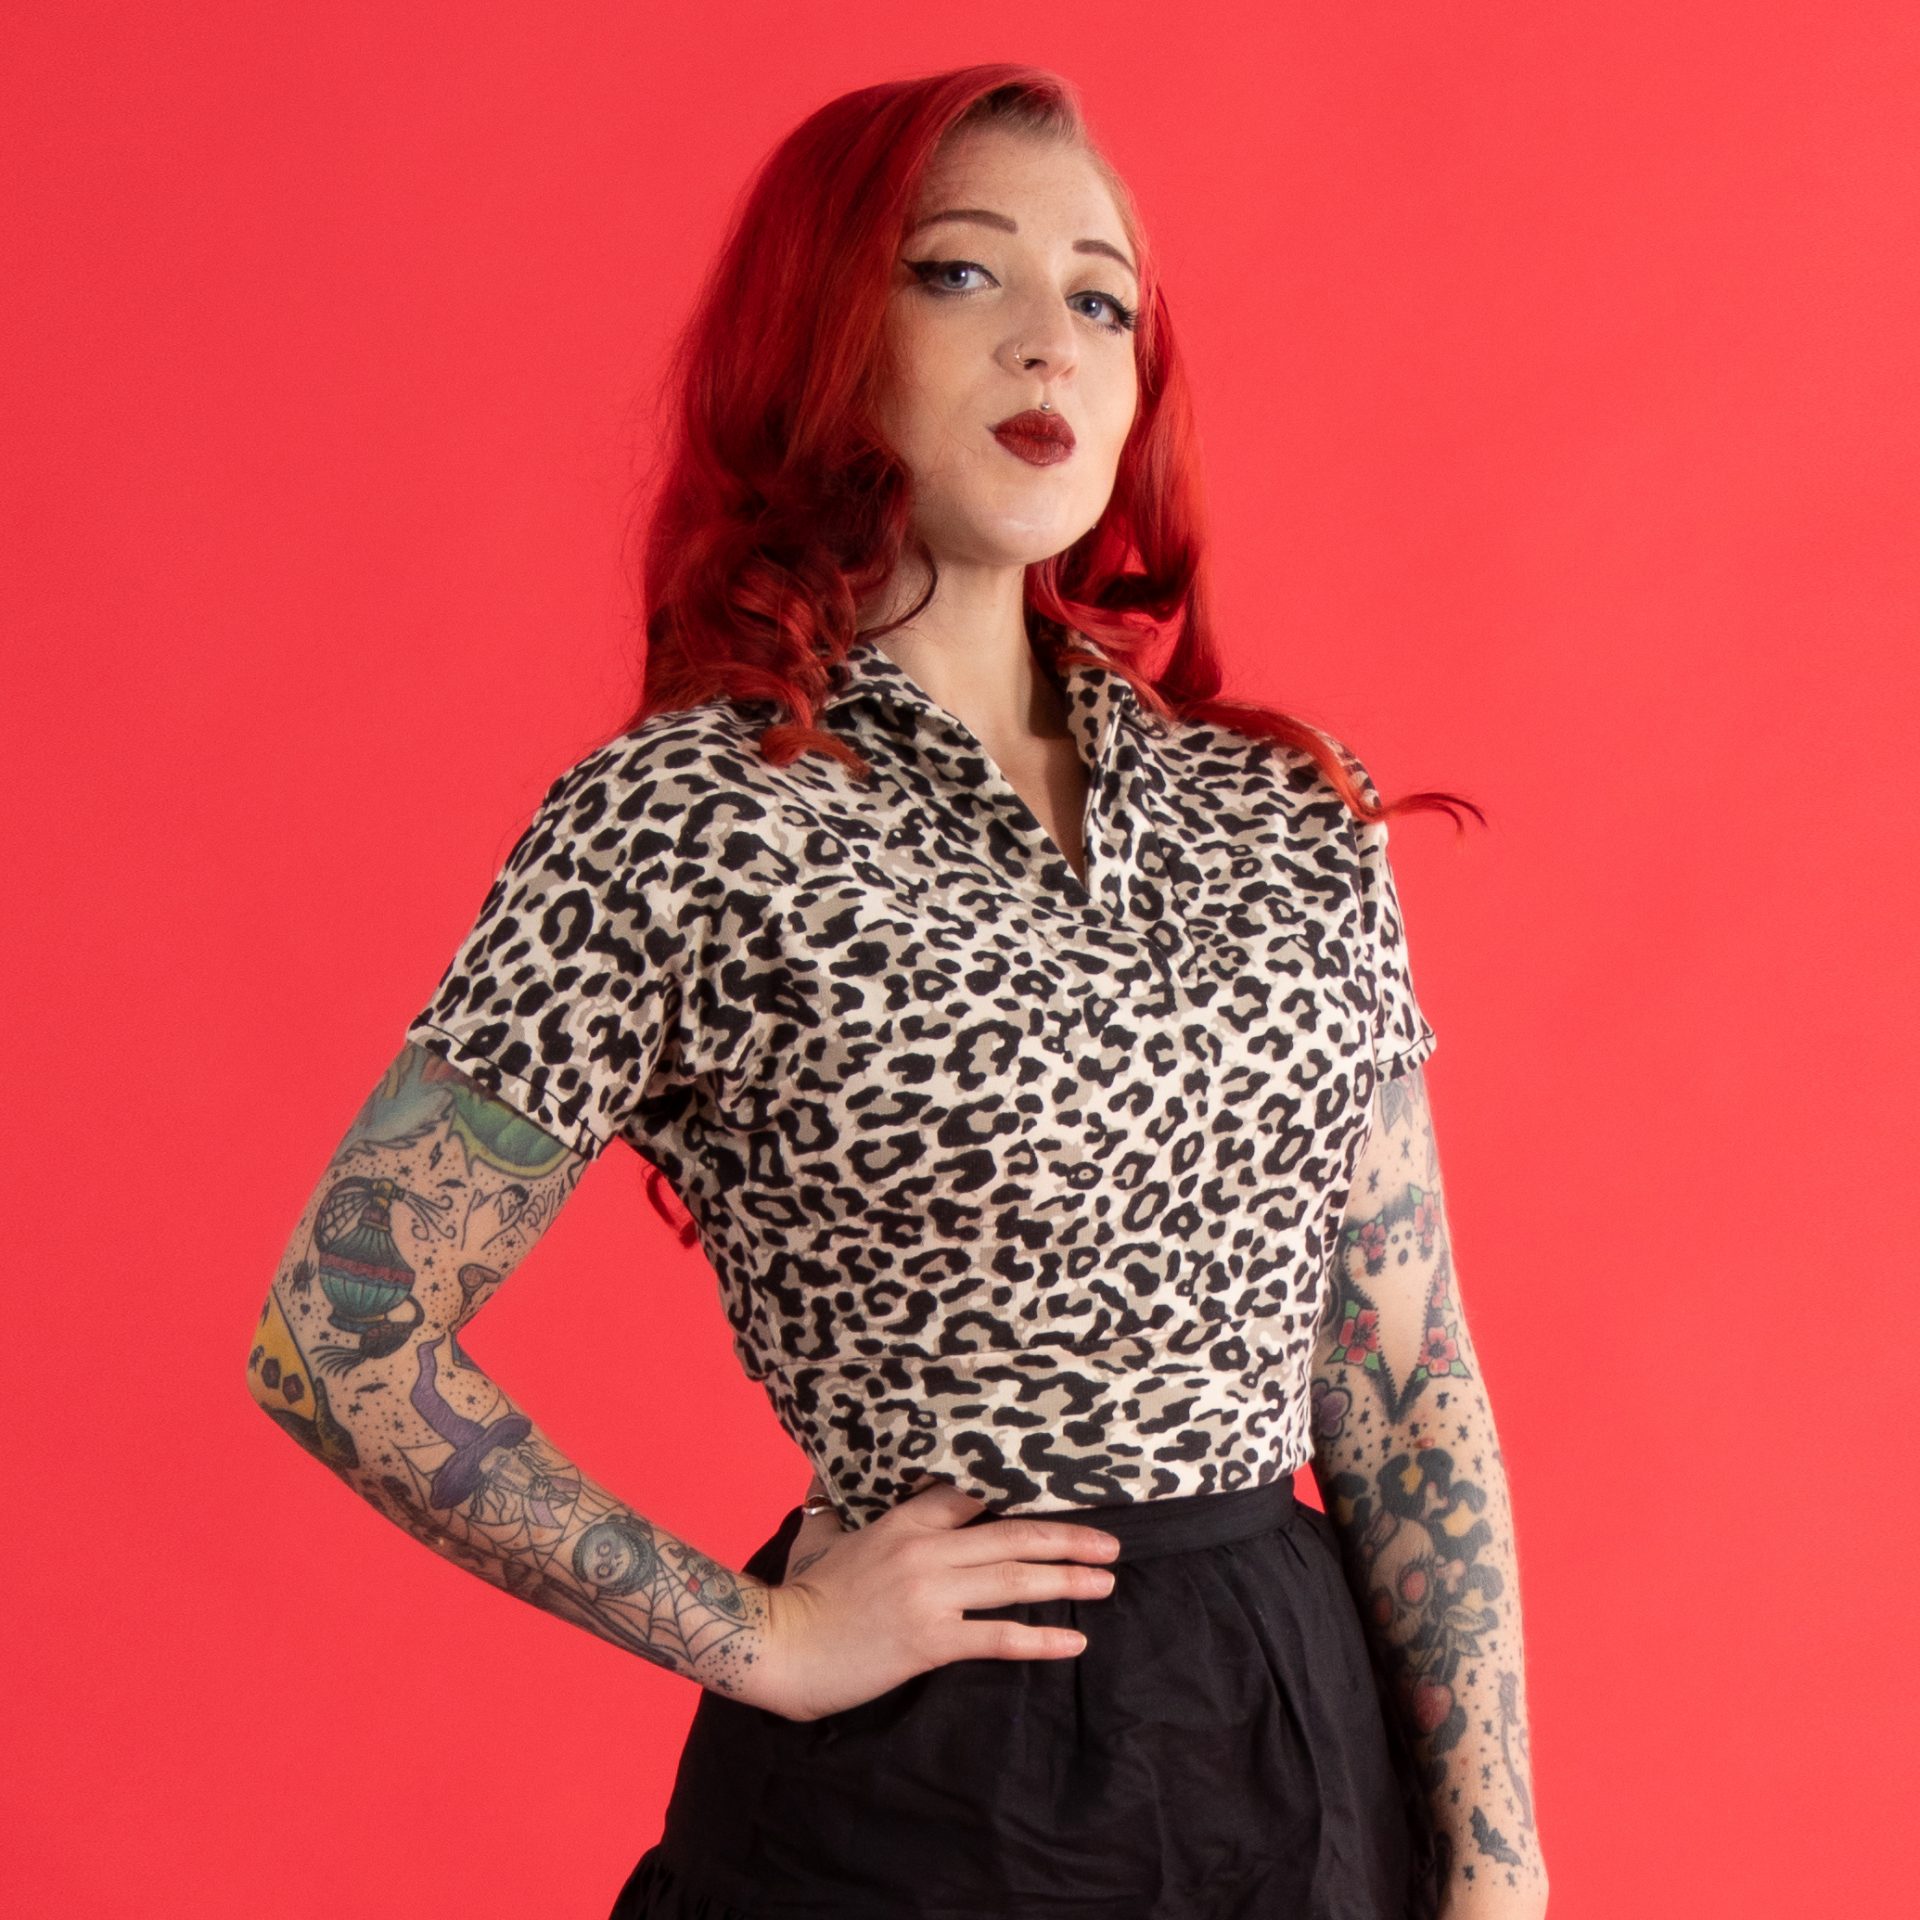 Jess Leopard Front | Leopard Print in Fashion